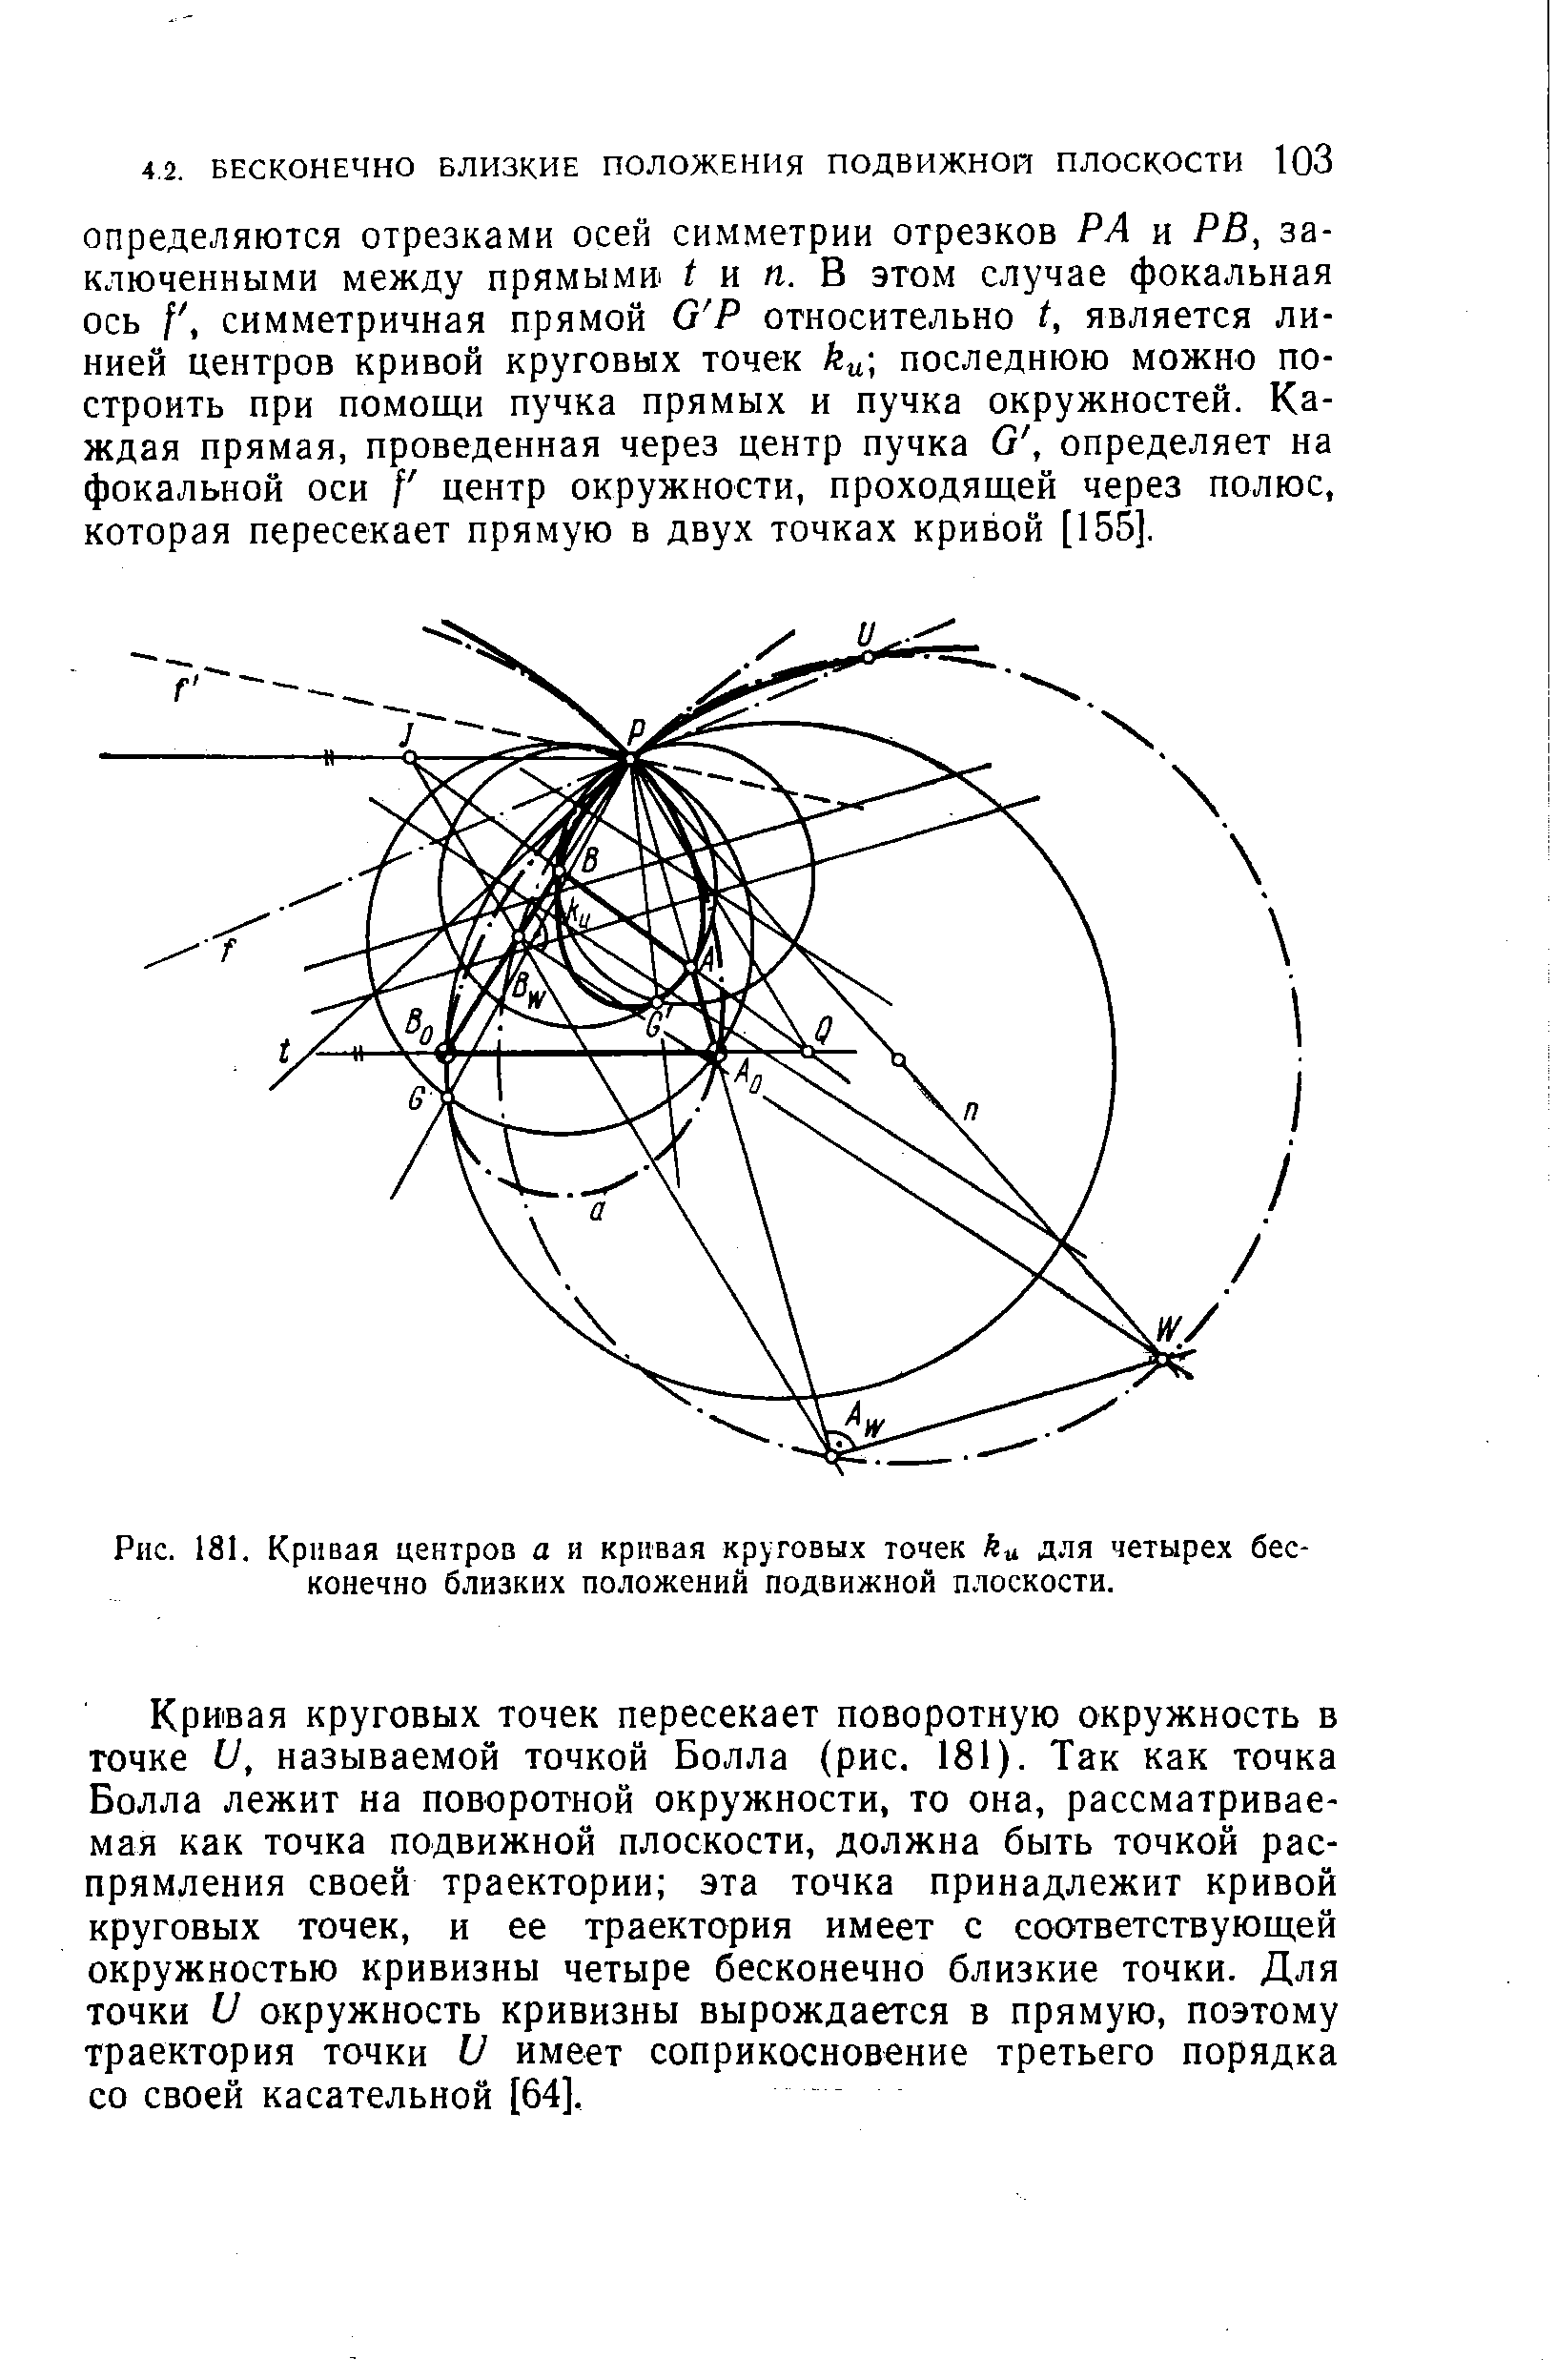 Рис. 181. Кривая центров а и <a href="/info/61603">кривая круговых точек</a> ku для четырех бесконечно близких положений подвижной плоскости.
